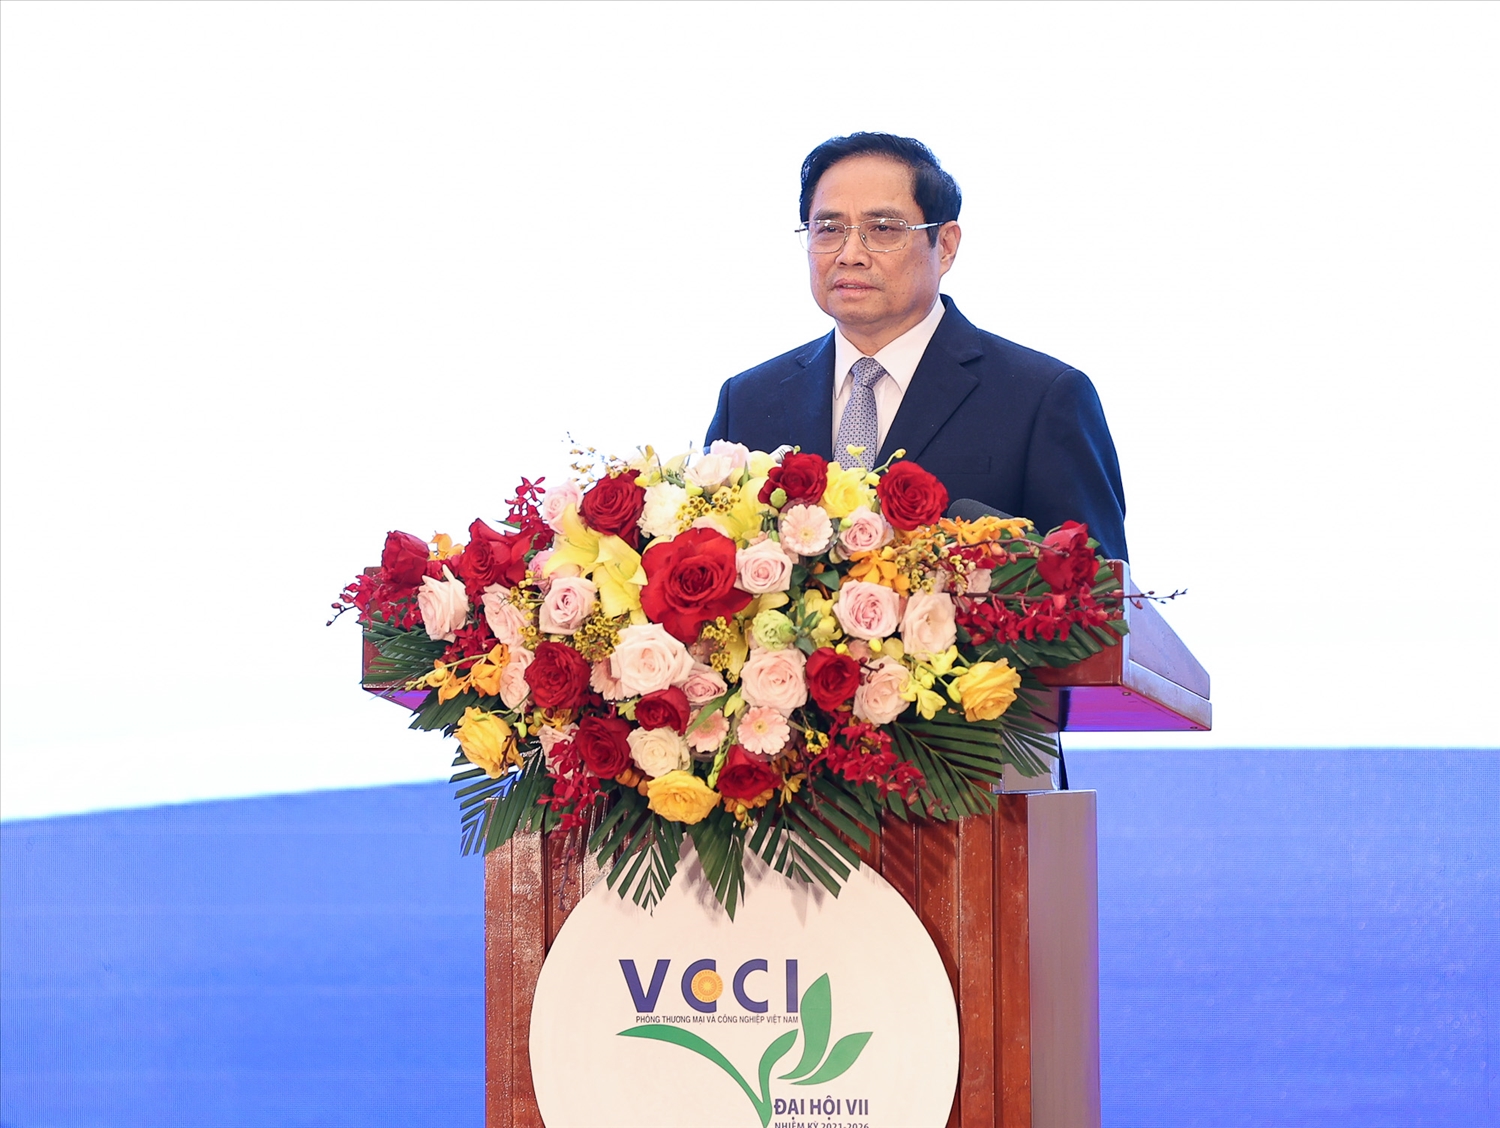 Thủ tướng Phạm Minh Chính: VCCI cần nỗ lực hơn nữa, phát huy sức mạnh tổng lực, tinh thần đoàn kết của cộng đồng doanh nghiệp Việt Nam để góp phần giải quyết những bài toán, vấn đề lớn đang đặt ra, đưa đất nước phát triển, hùng cường, thịnh vượng - Ảnh: VGP/Nhật Bắc